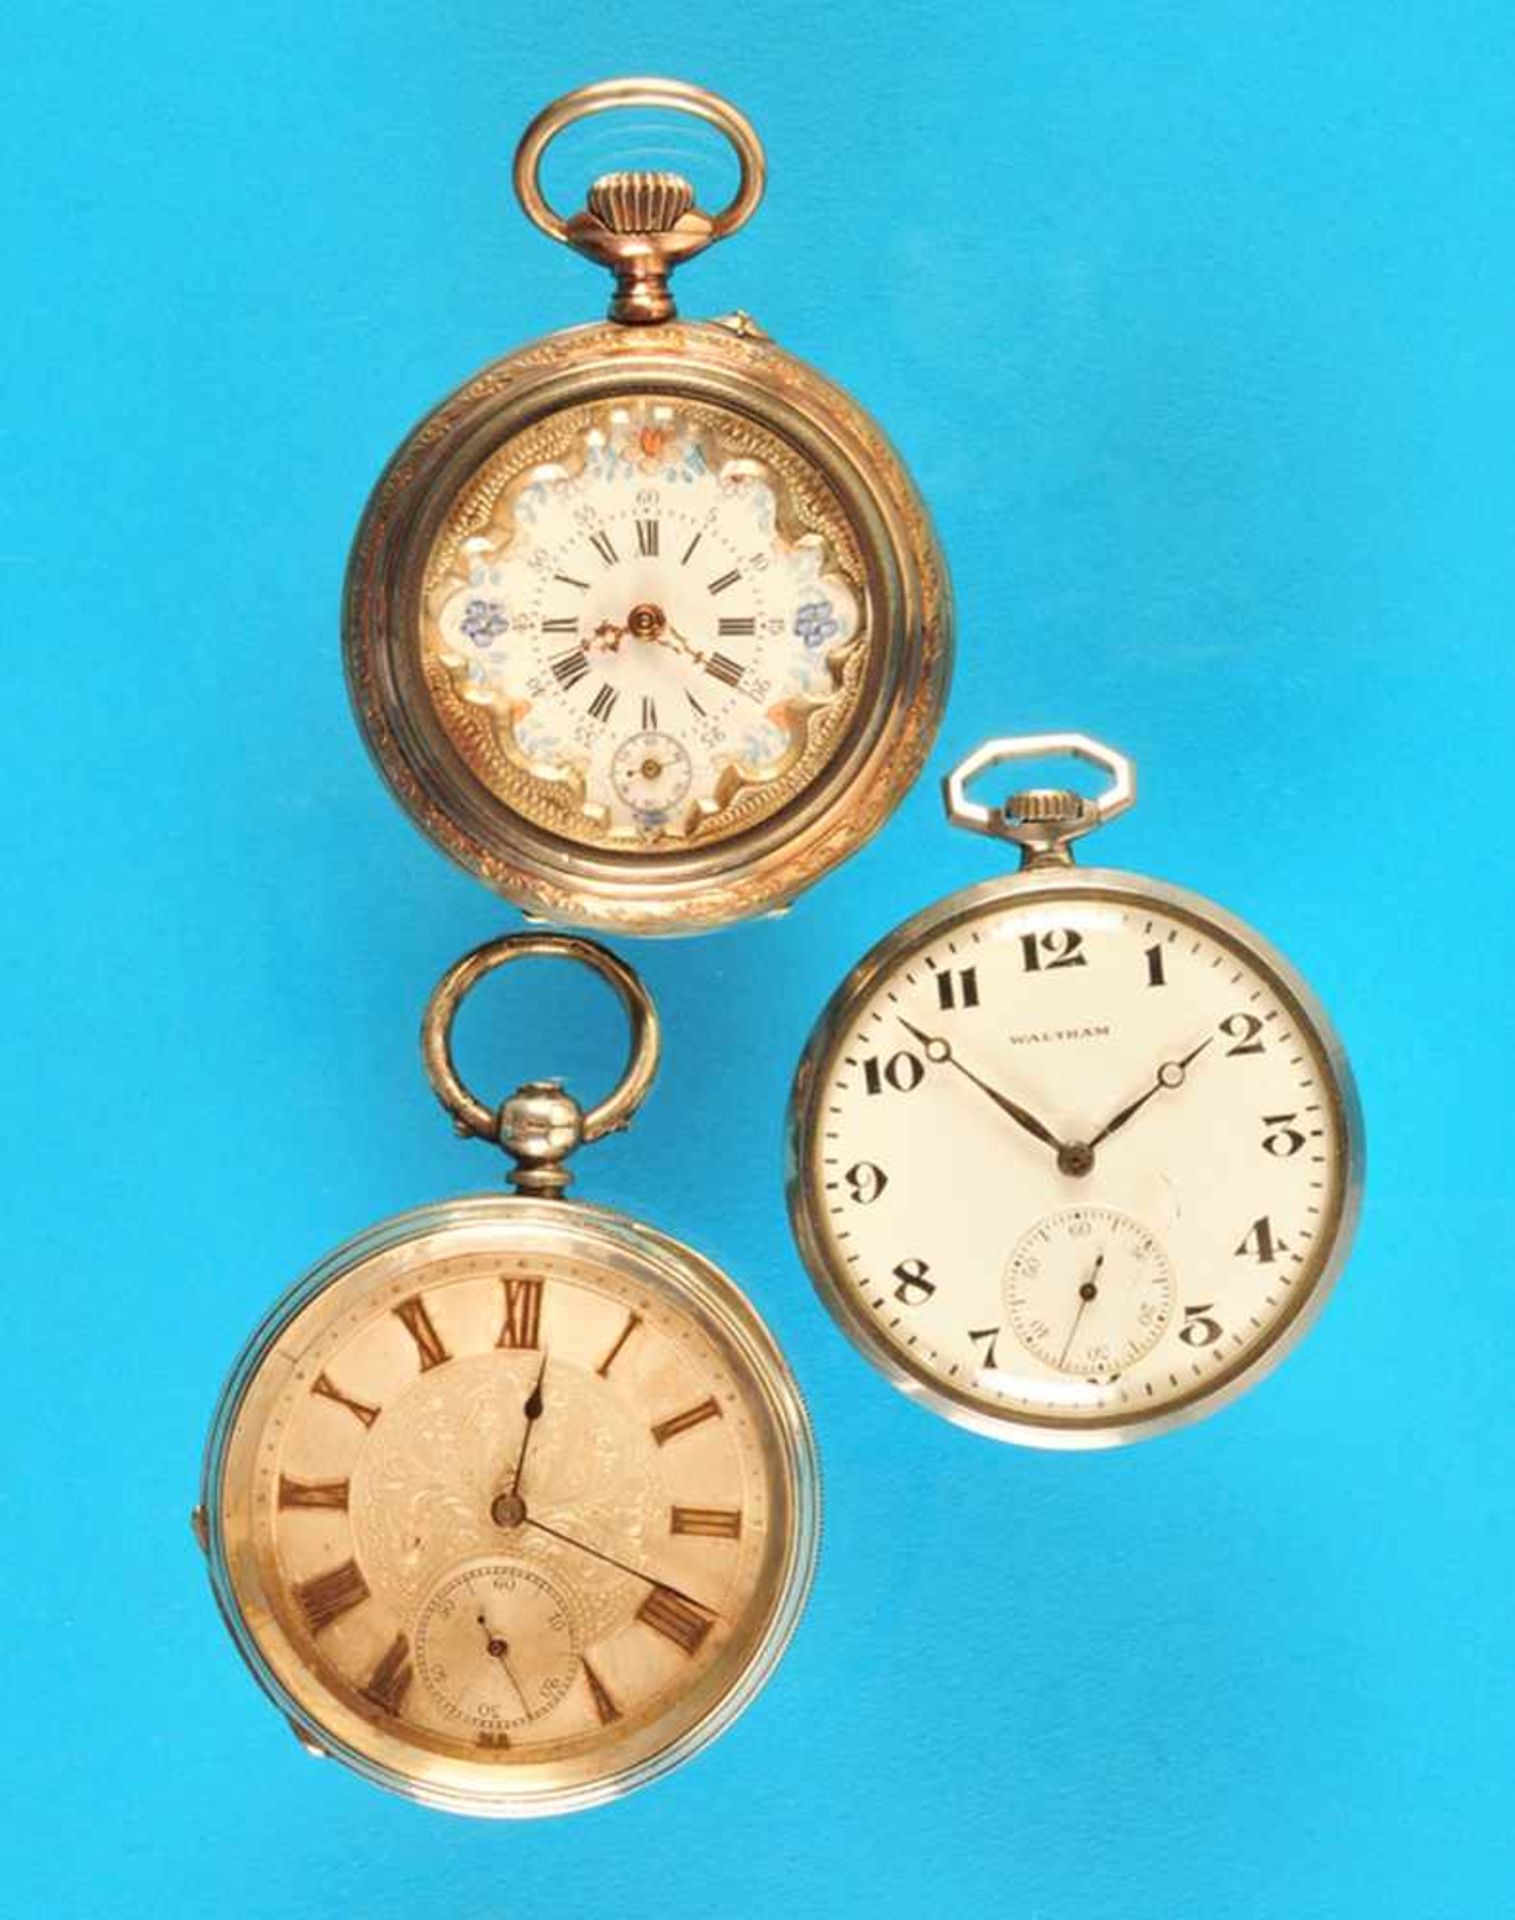 Bundle with 3 pocket watchesKonvolut mit 3 Taschenuhren: Metalltaschenuhr, Waltham, glattes Gehäuse,